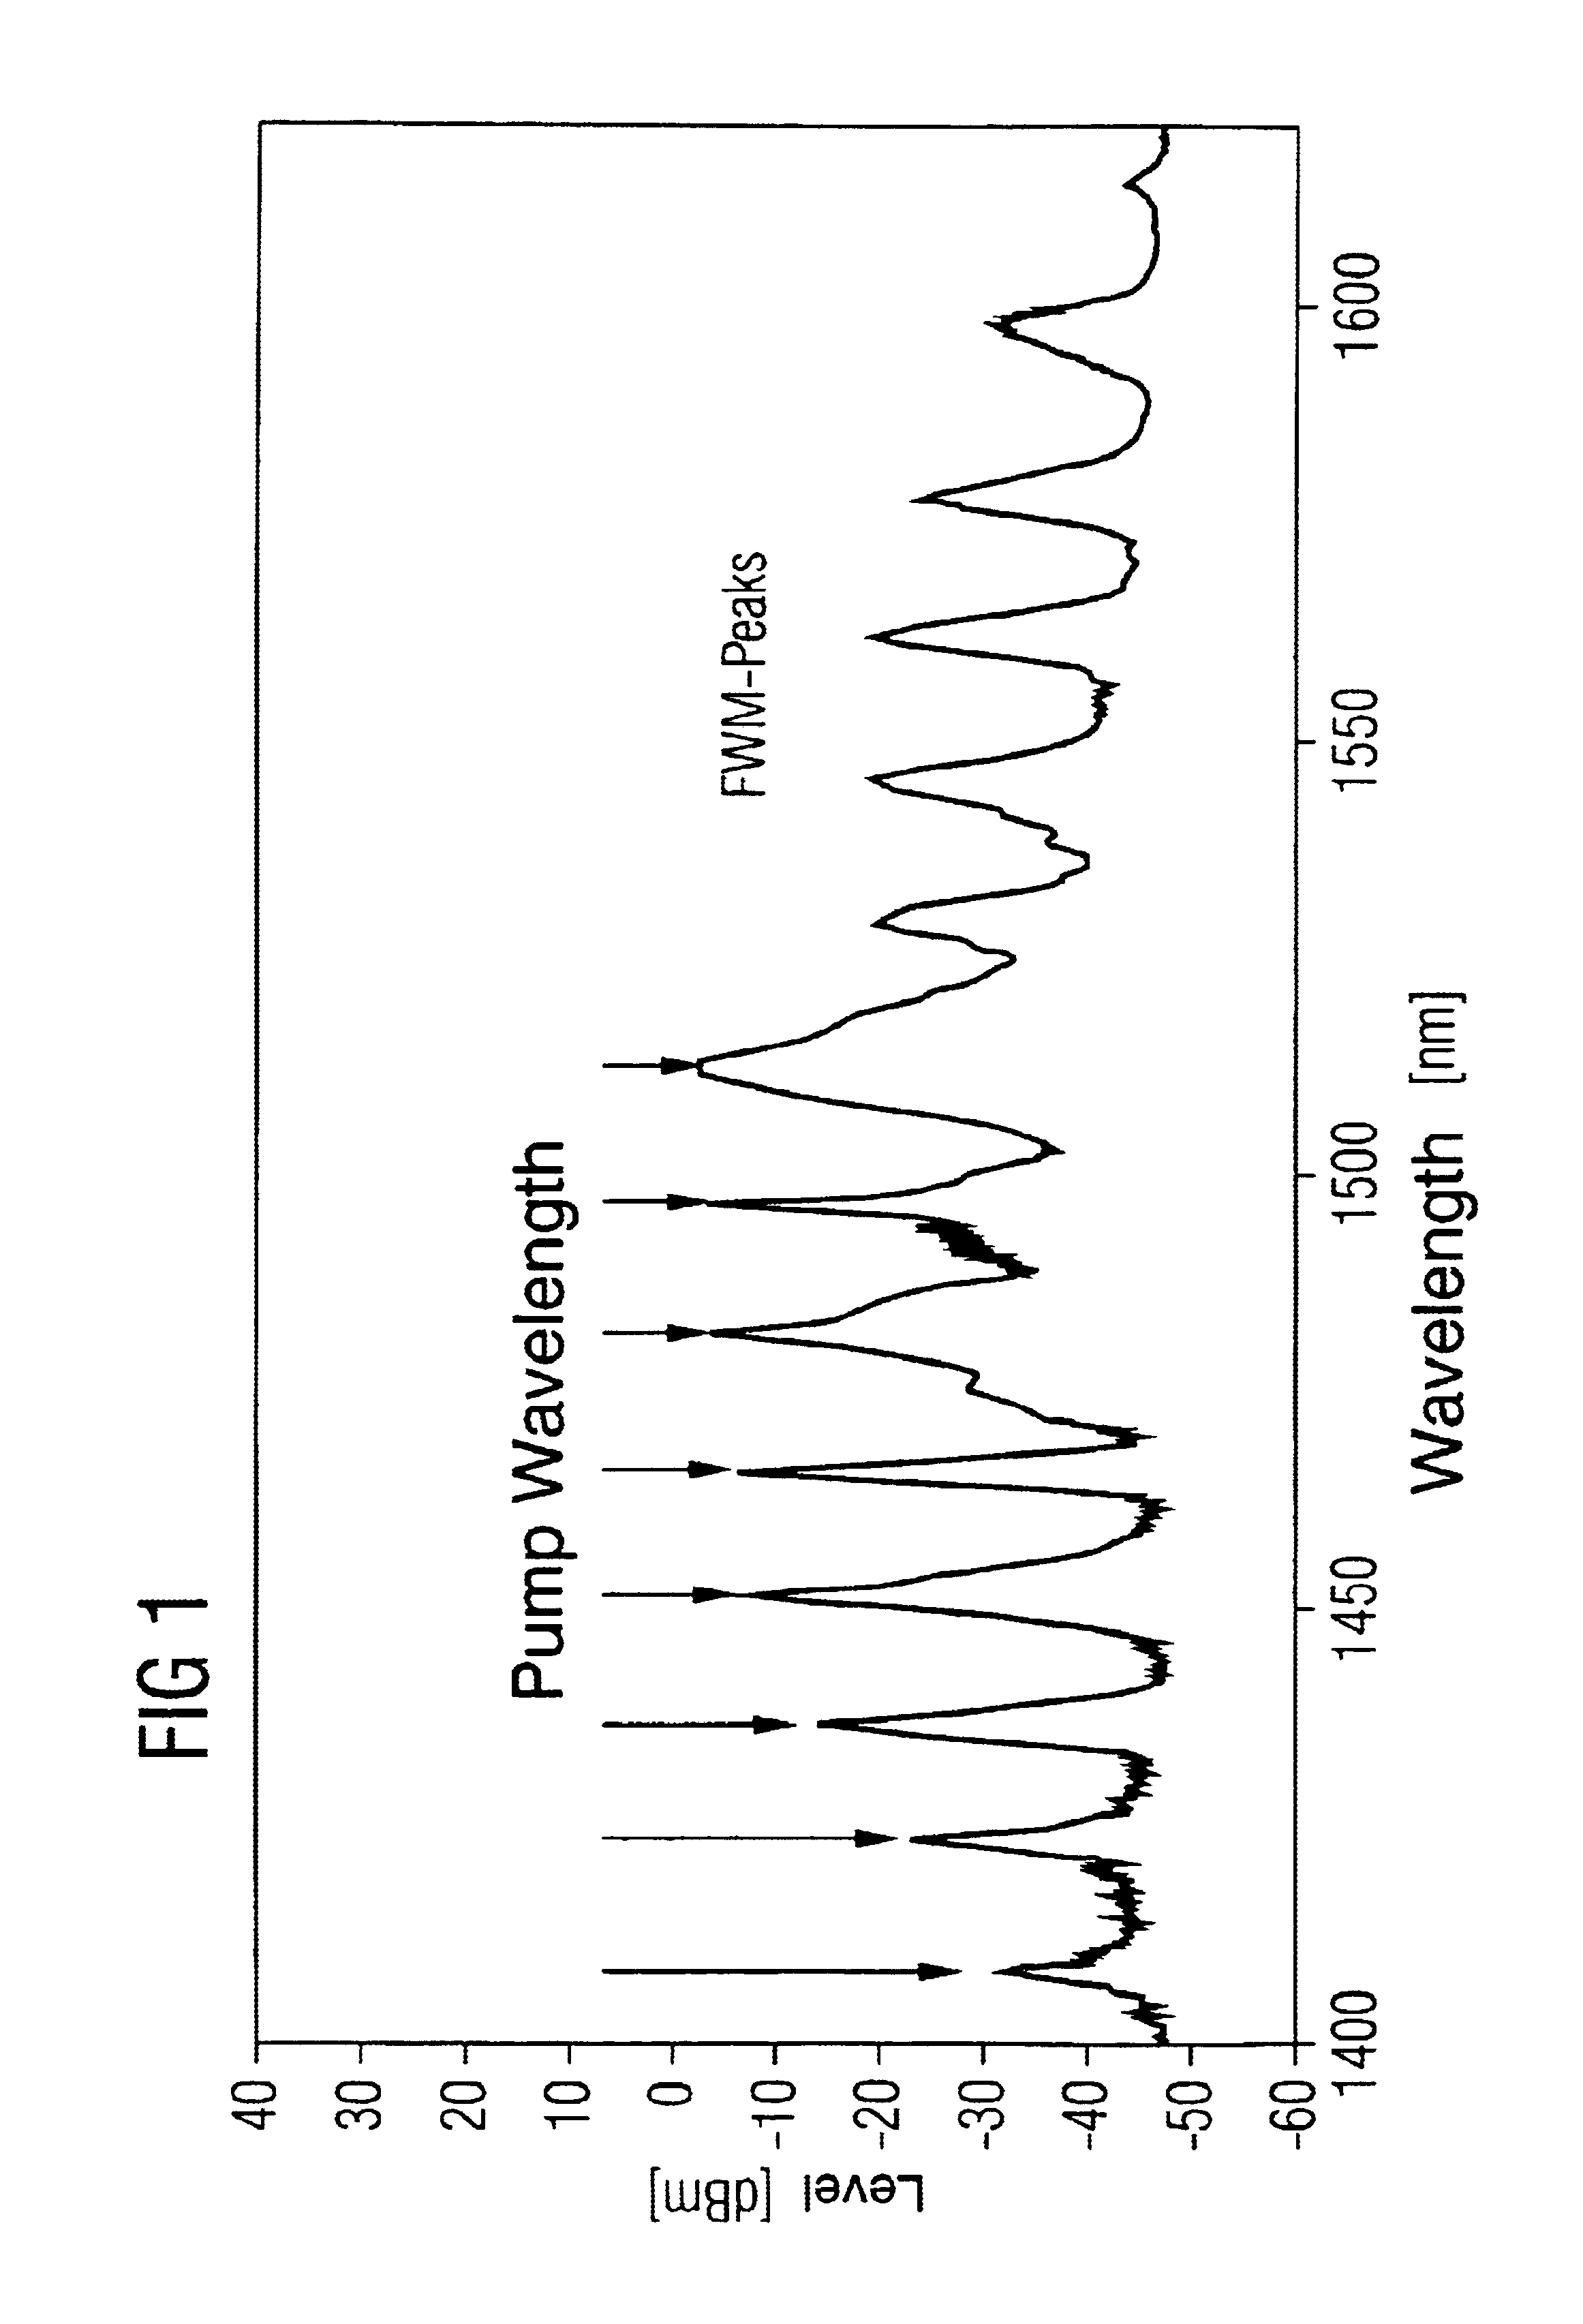 Multiplexer for providing non-equidistant intervals between pump wavelengths in broadband raman amplifiers